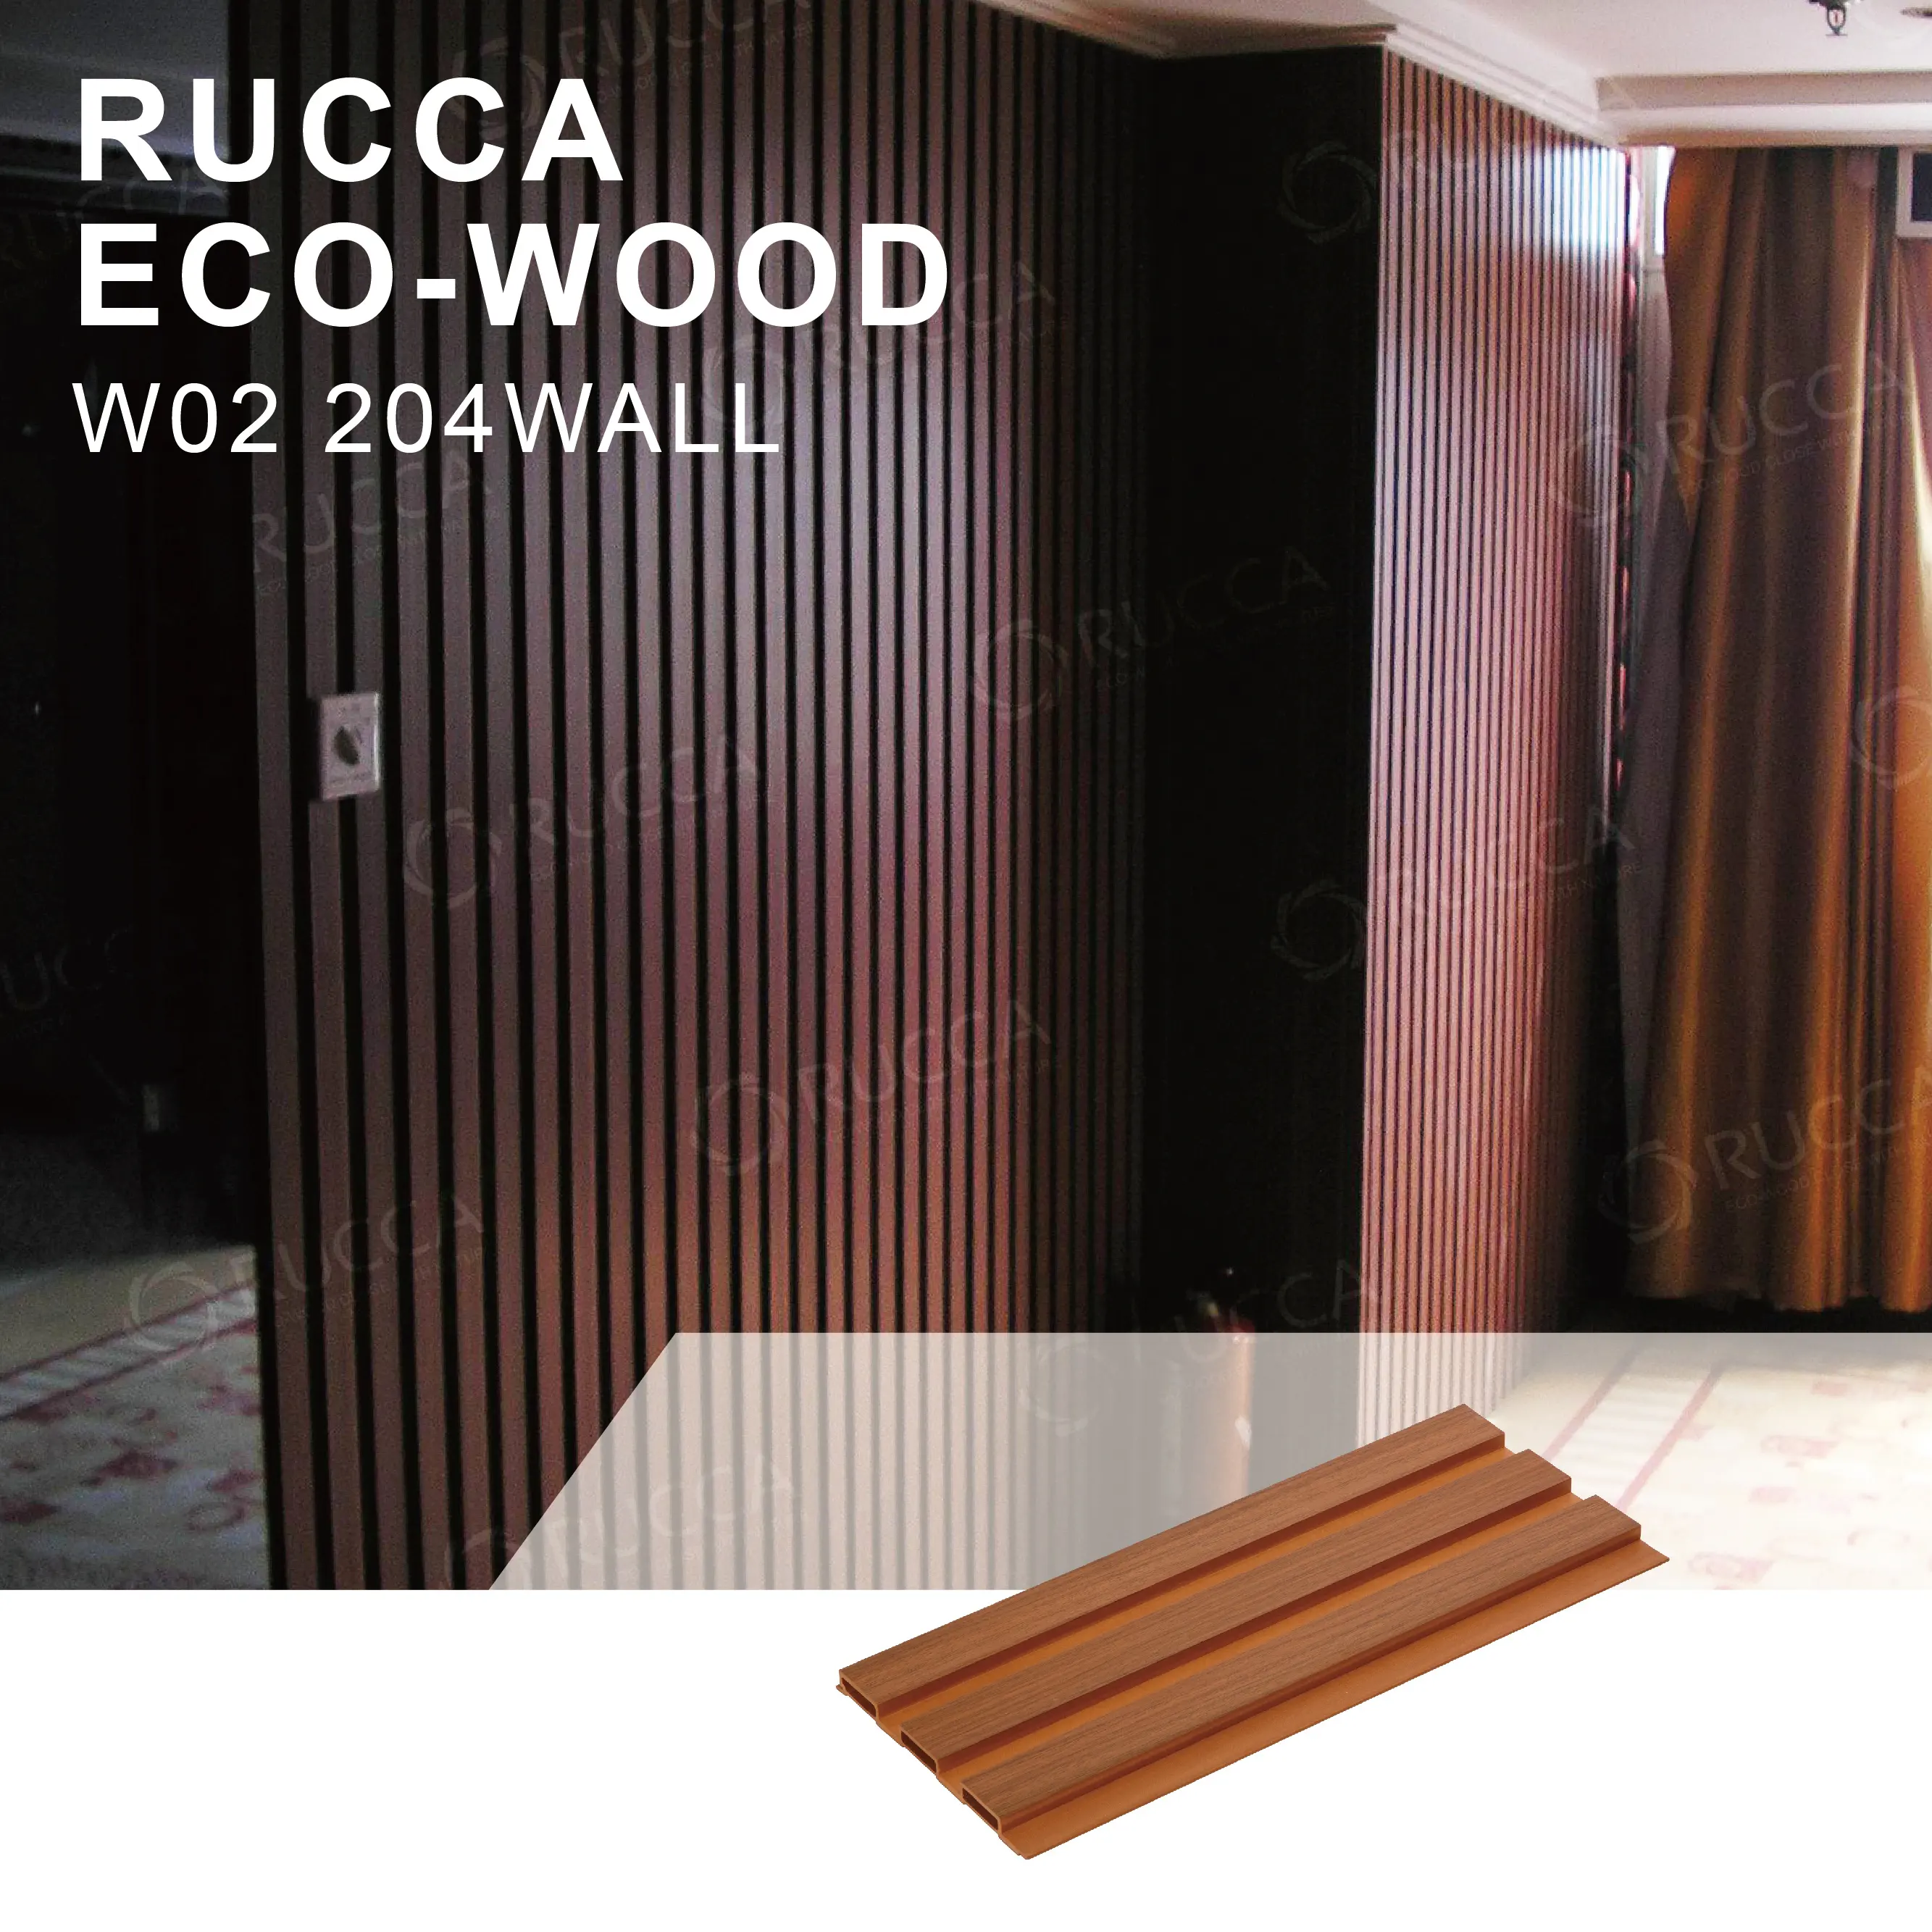 WPC-Panel de pared compuesto de madera y plástico, para paneles decorativos, Pvc, 204x16mm, Color blanco, grano de madera Natural, RUCCA